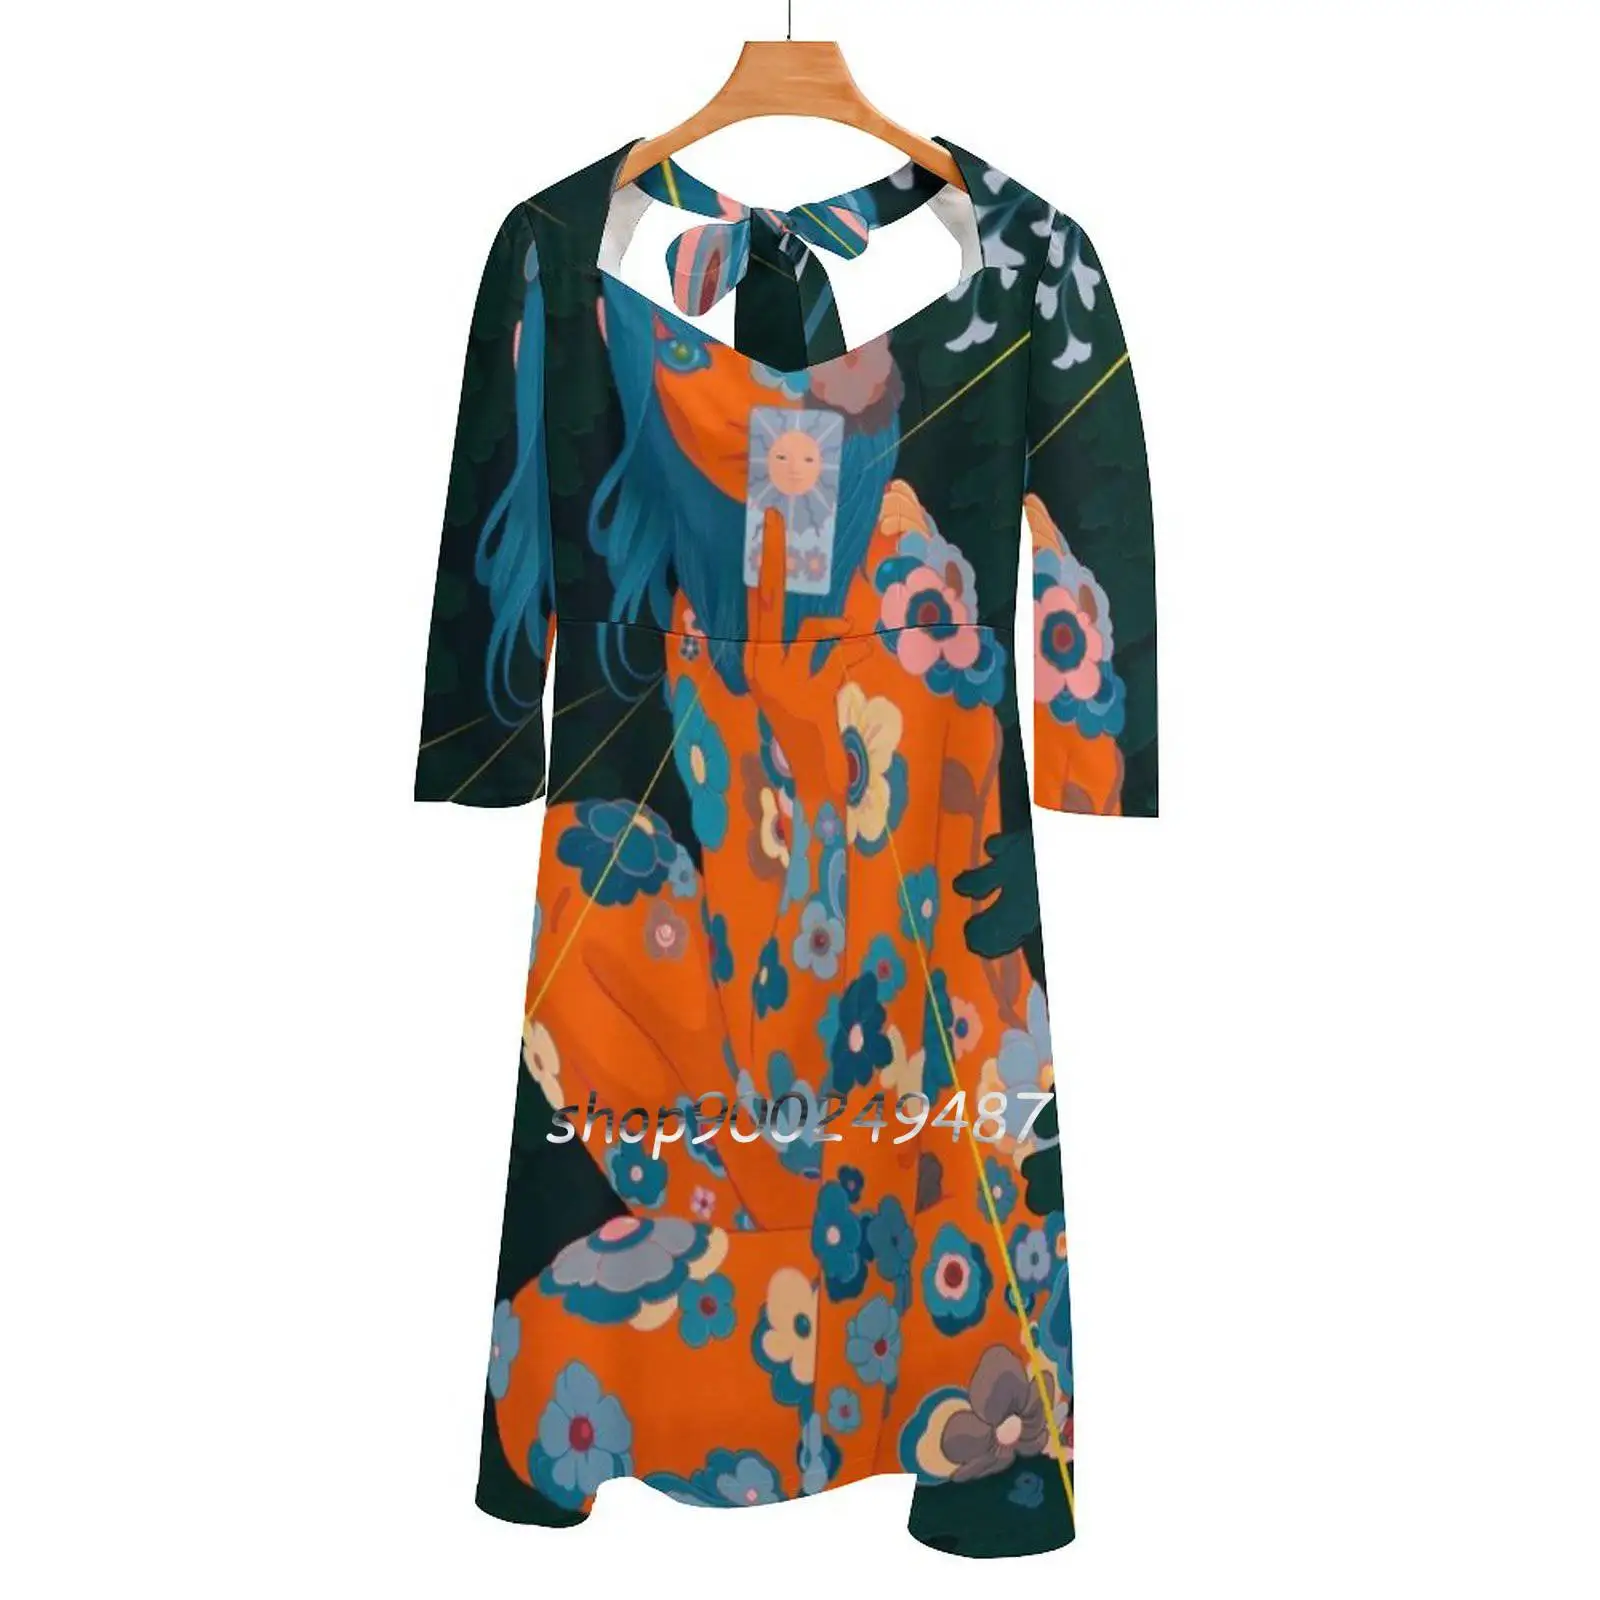 

Расклешенное платье Azimuth-Suntarot-Lores с сердечком, модное дизайнерское свободное платье большого размера, винтажное платье с надписью Love Power Girl